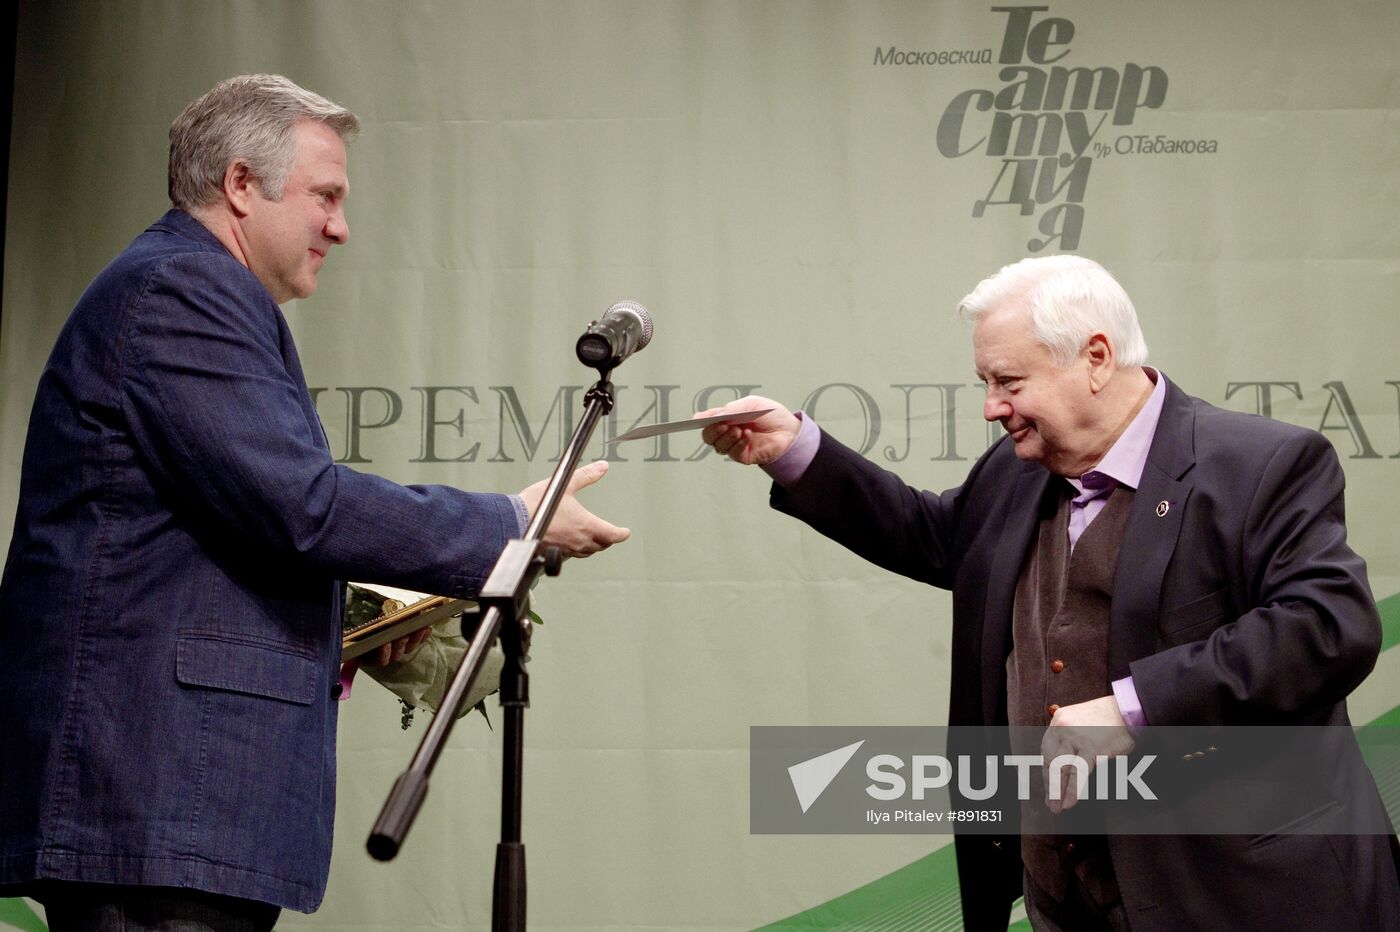 Presentation of Oleg Tabakov awards